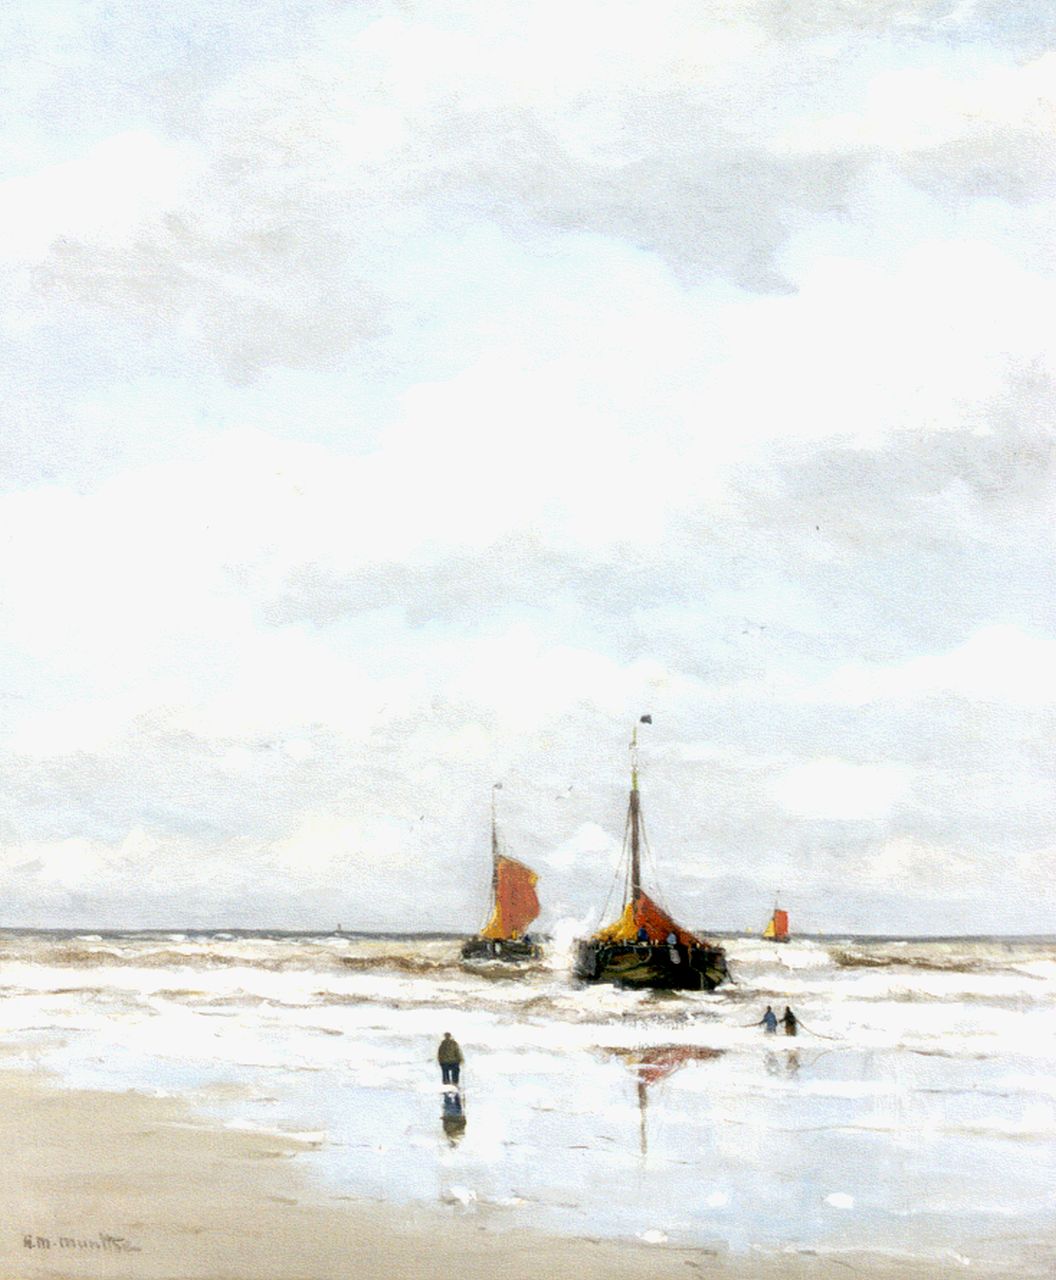 Munthe G.A.L.  | Gerhard Arij Ludwig 'Morgenstjerne' Munthe, 'Bomschuiten' in the surf, oil on canvas 76.2 x 63.5 cm, signed l.l.